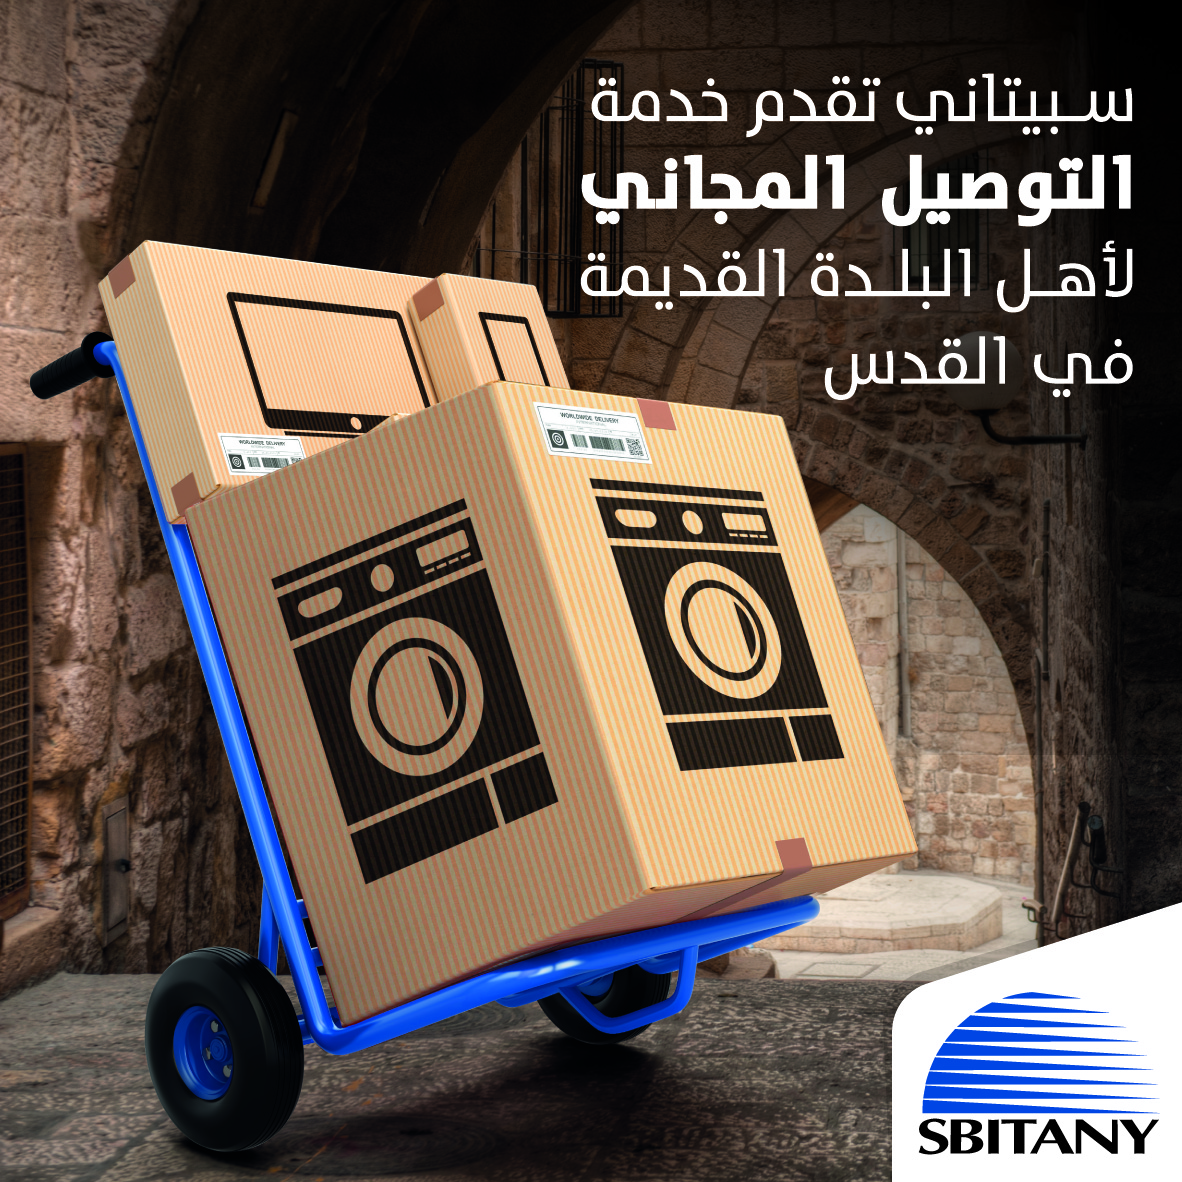 سبيتاني تقدم خدمة التوصيل المجاني  لأهل البلدة القديمة في القدس